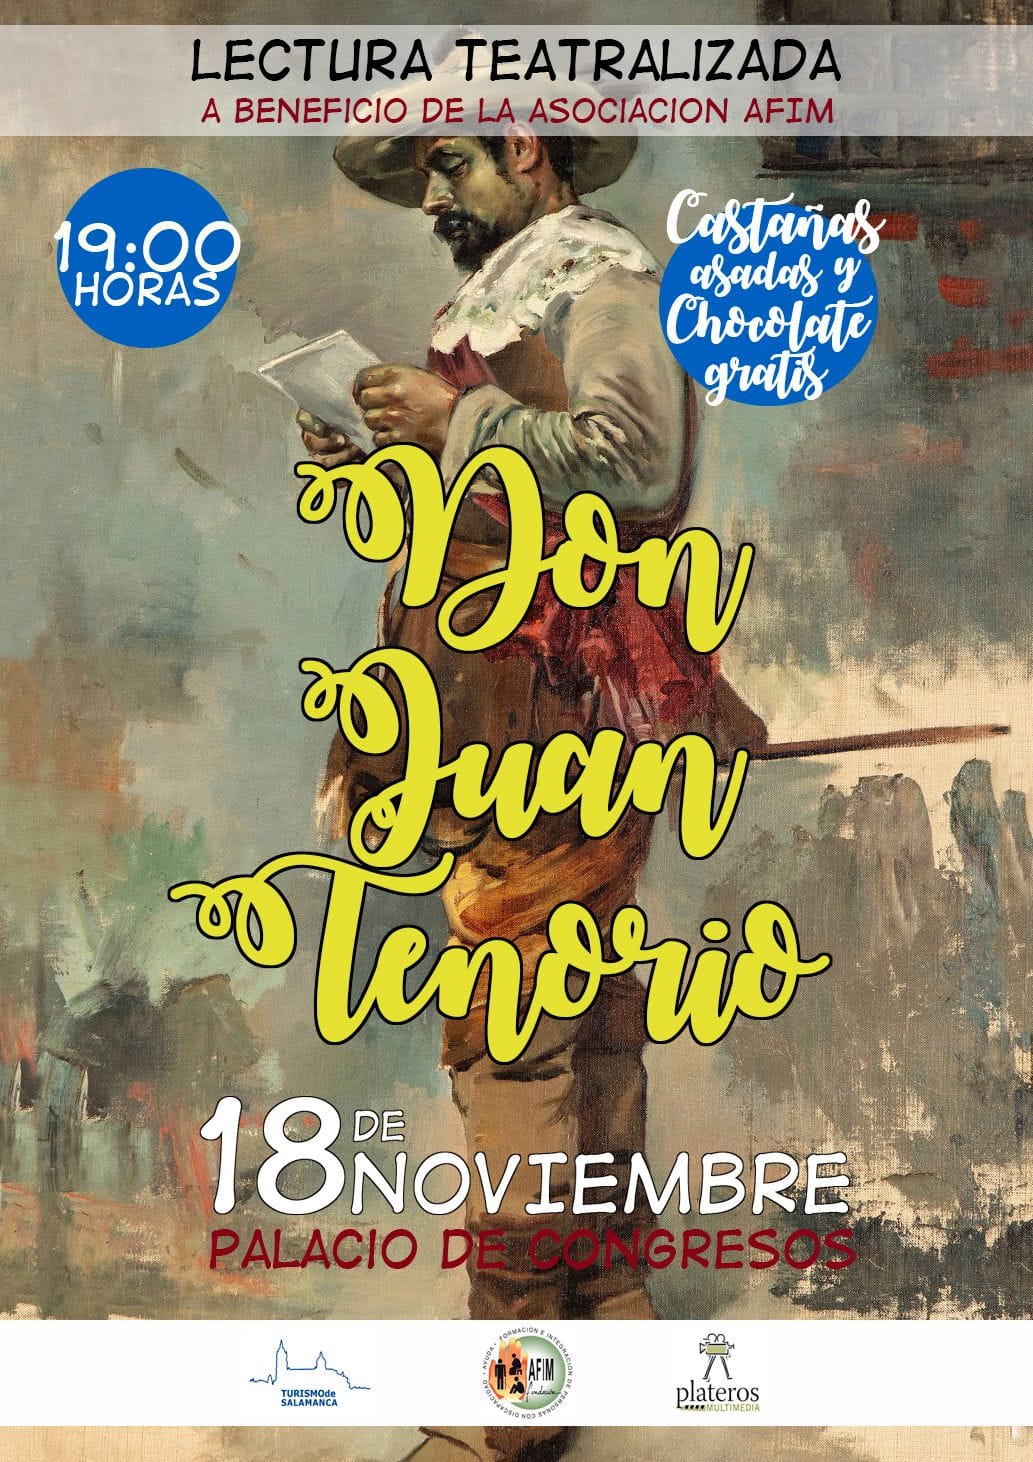  Lectura teatralizada de Don Juan Tenorio a beneficio de Fundación AFIM